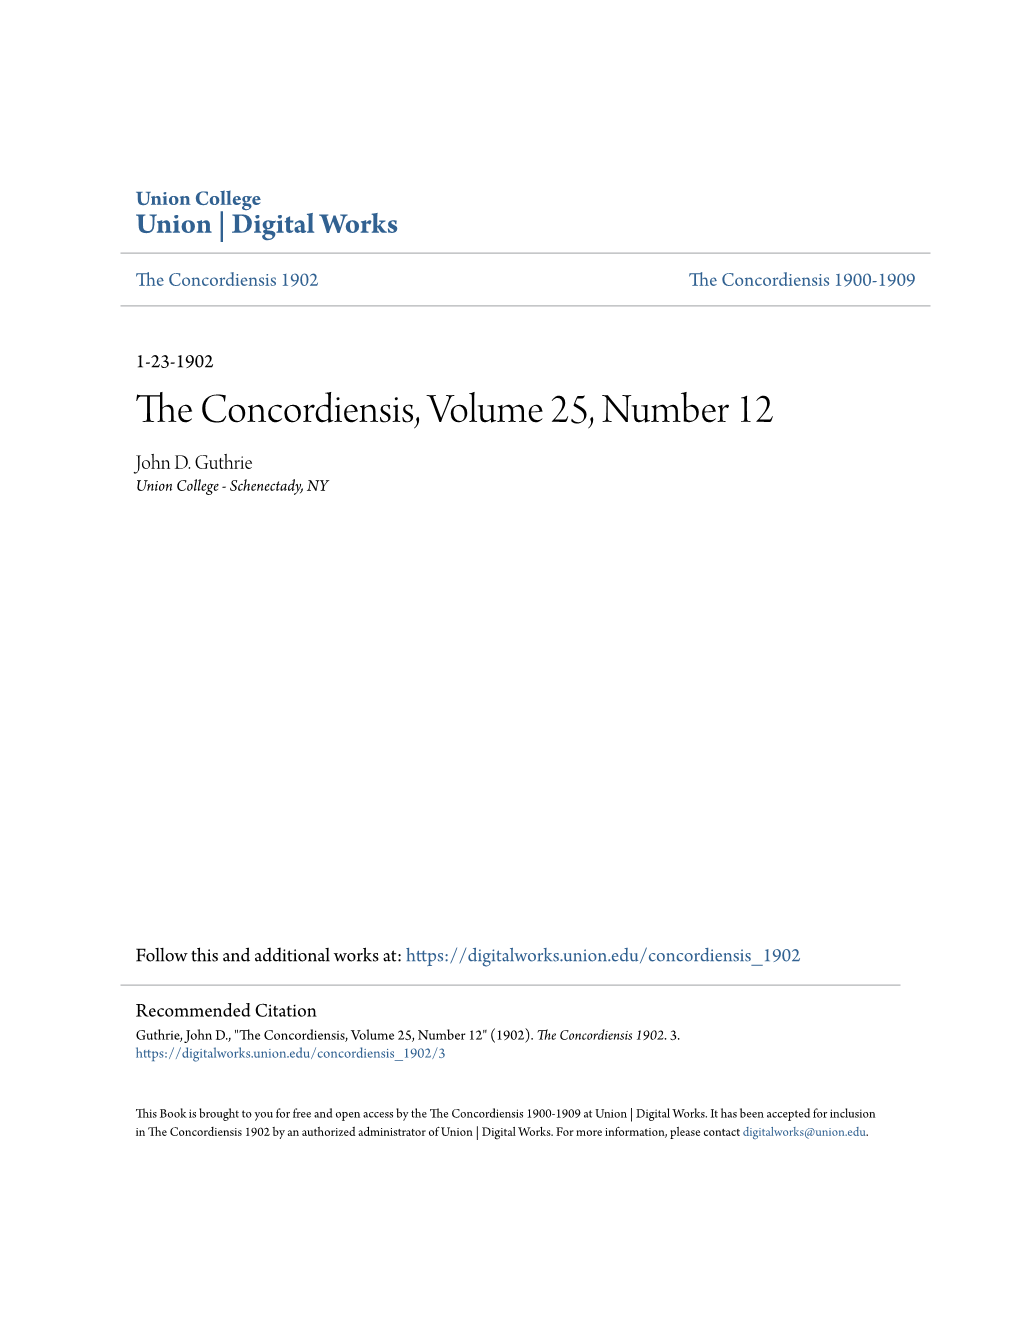 The Concordiensis, Volume 25, Number 12